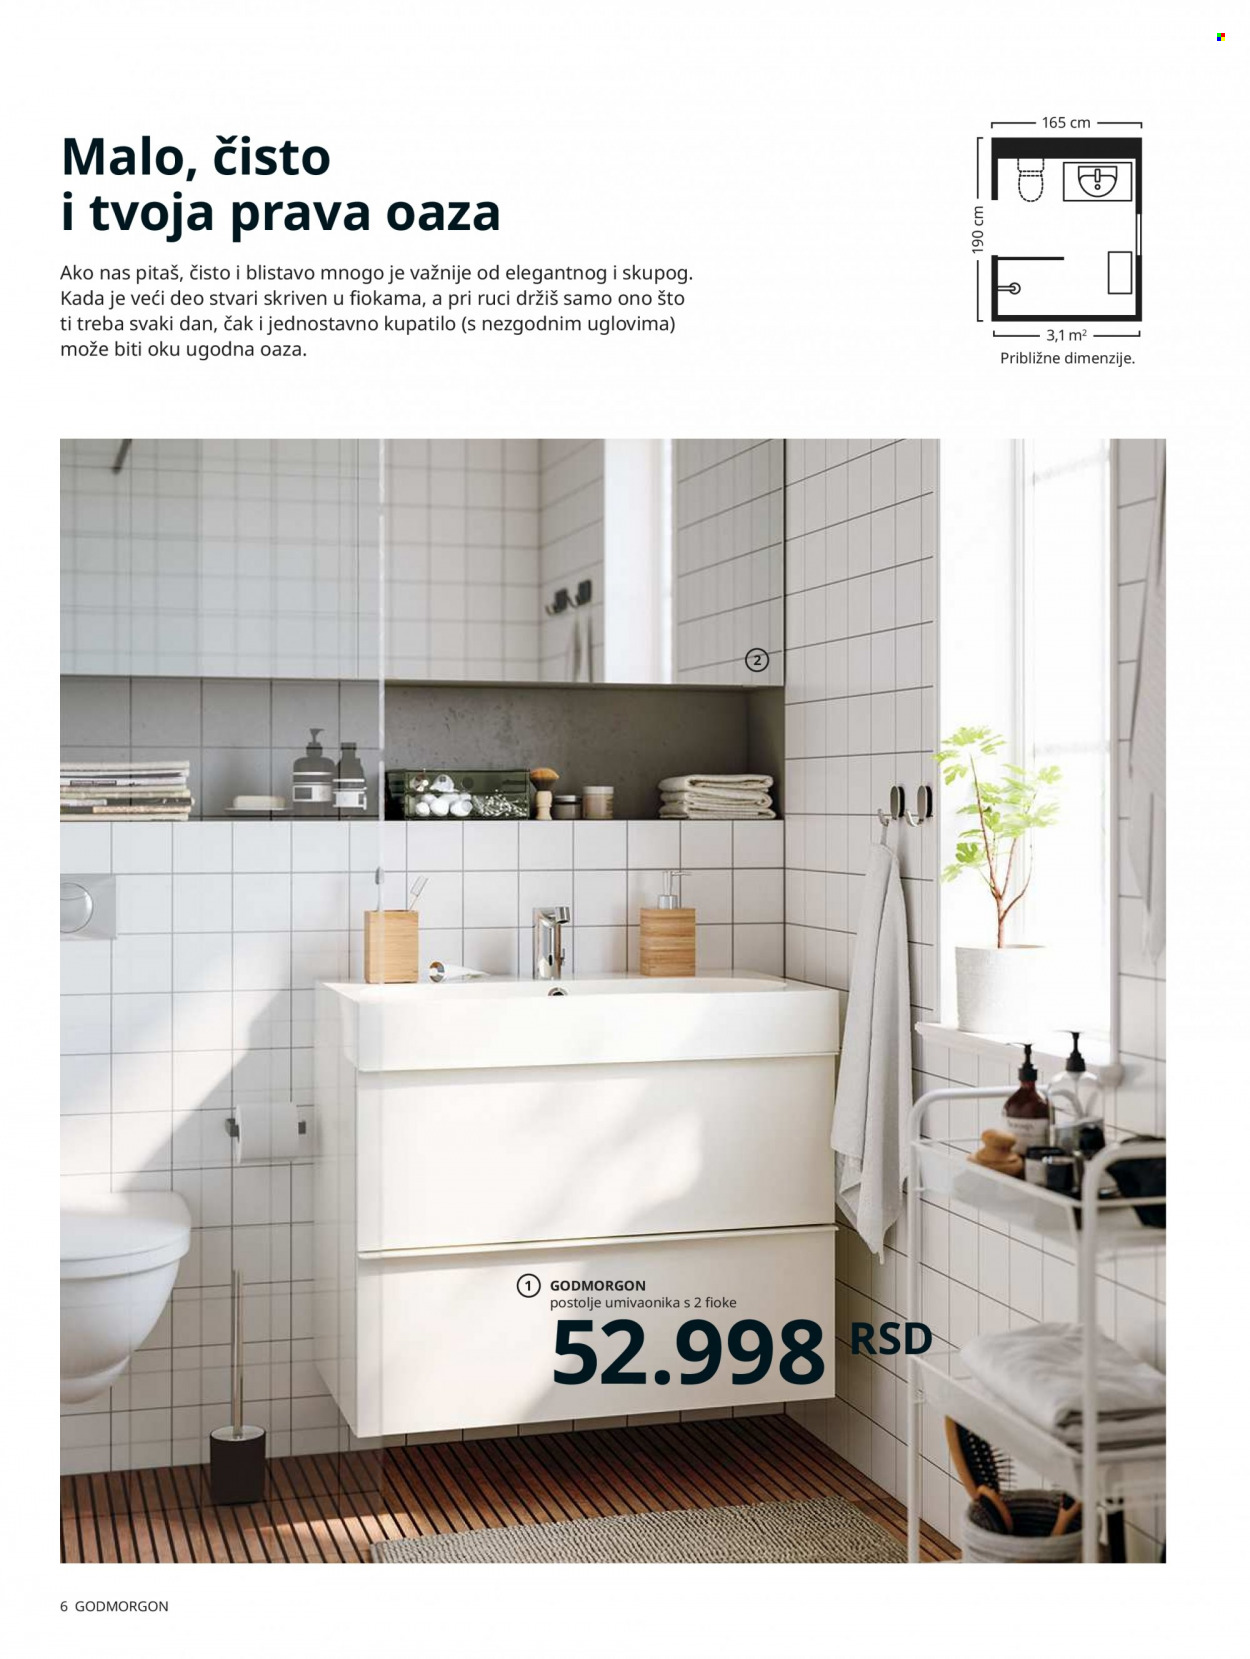 thumbnail - IKEA katalog - Proizvodi na akciji - ogledalo, dozer tečnog sapuna, aluminijumska folija, fiokice, polica, postolje umivaonika, sto, fioke, slavina. Stranica 6.